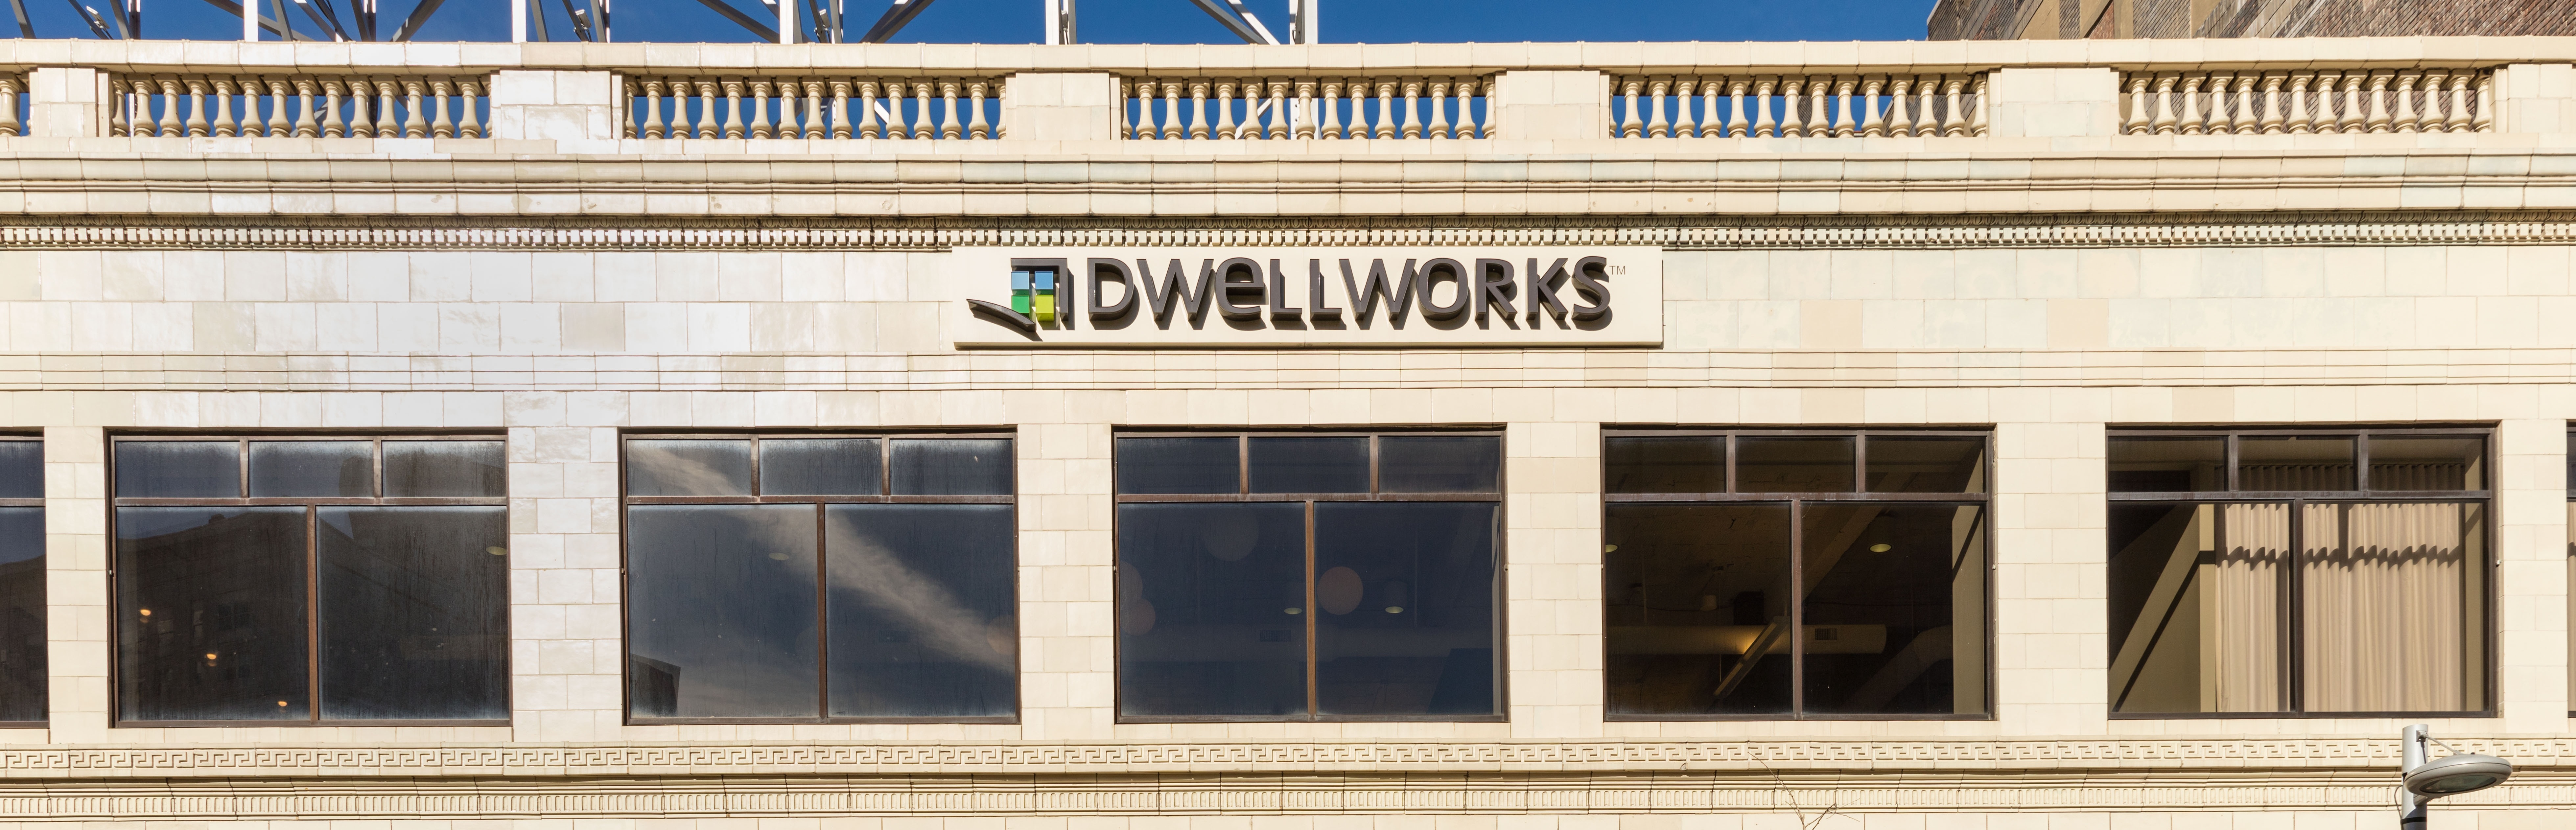  Dwellworks 11_15 01-518674-edited.jpg